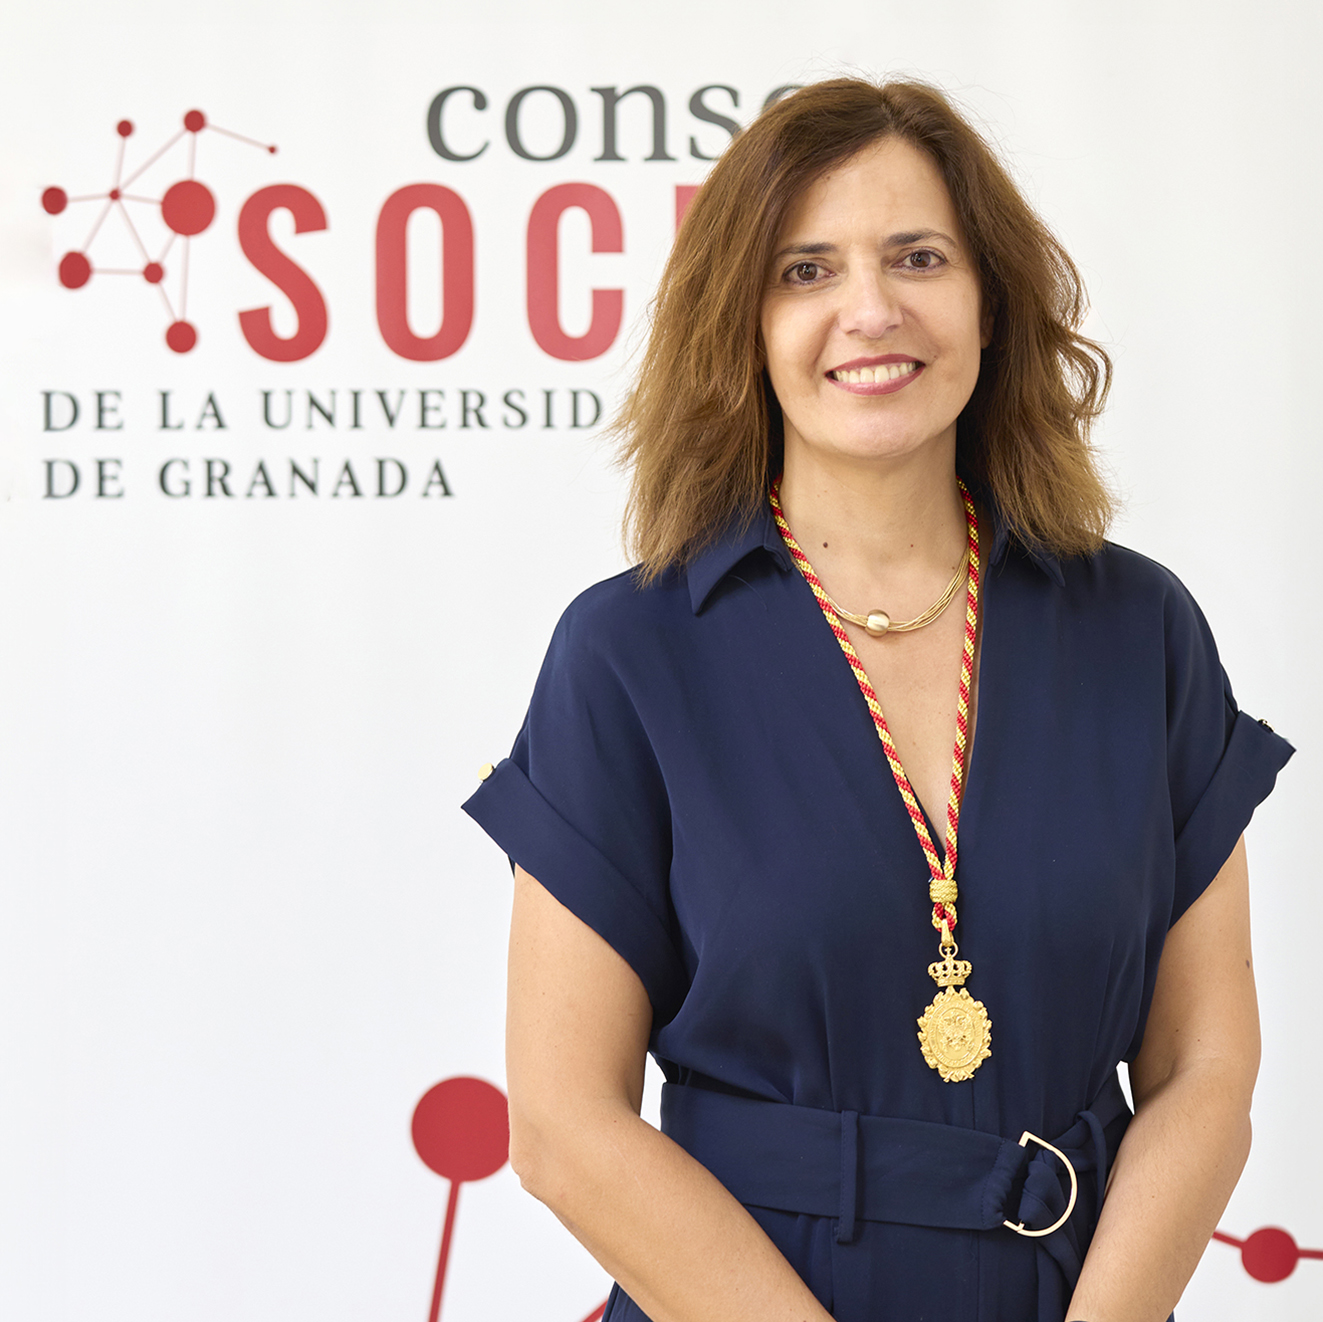 Susana Sánchez Navarro